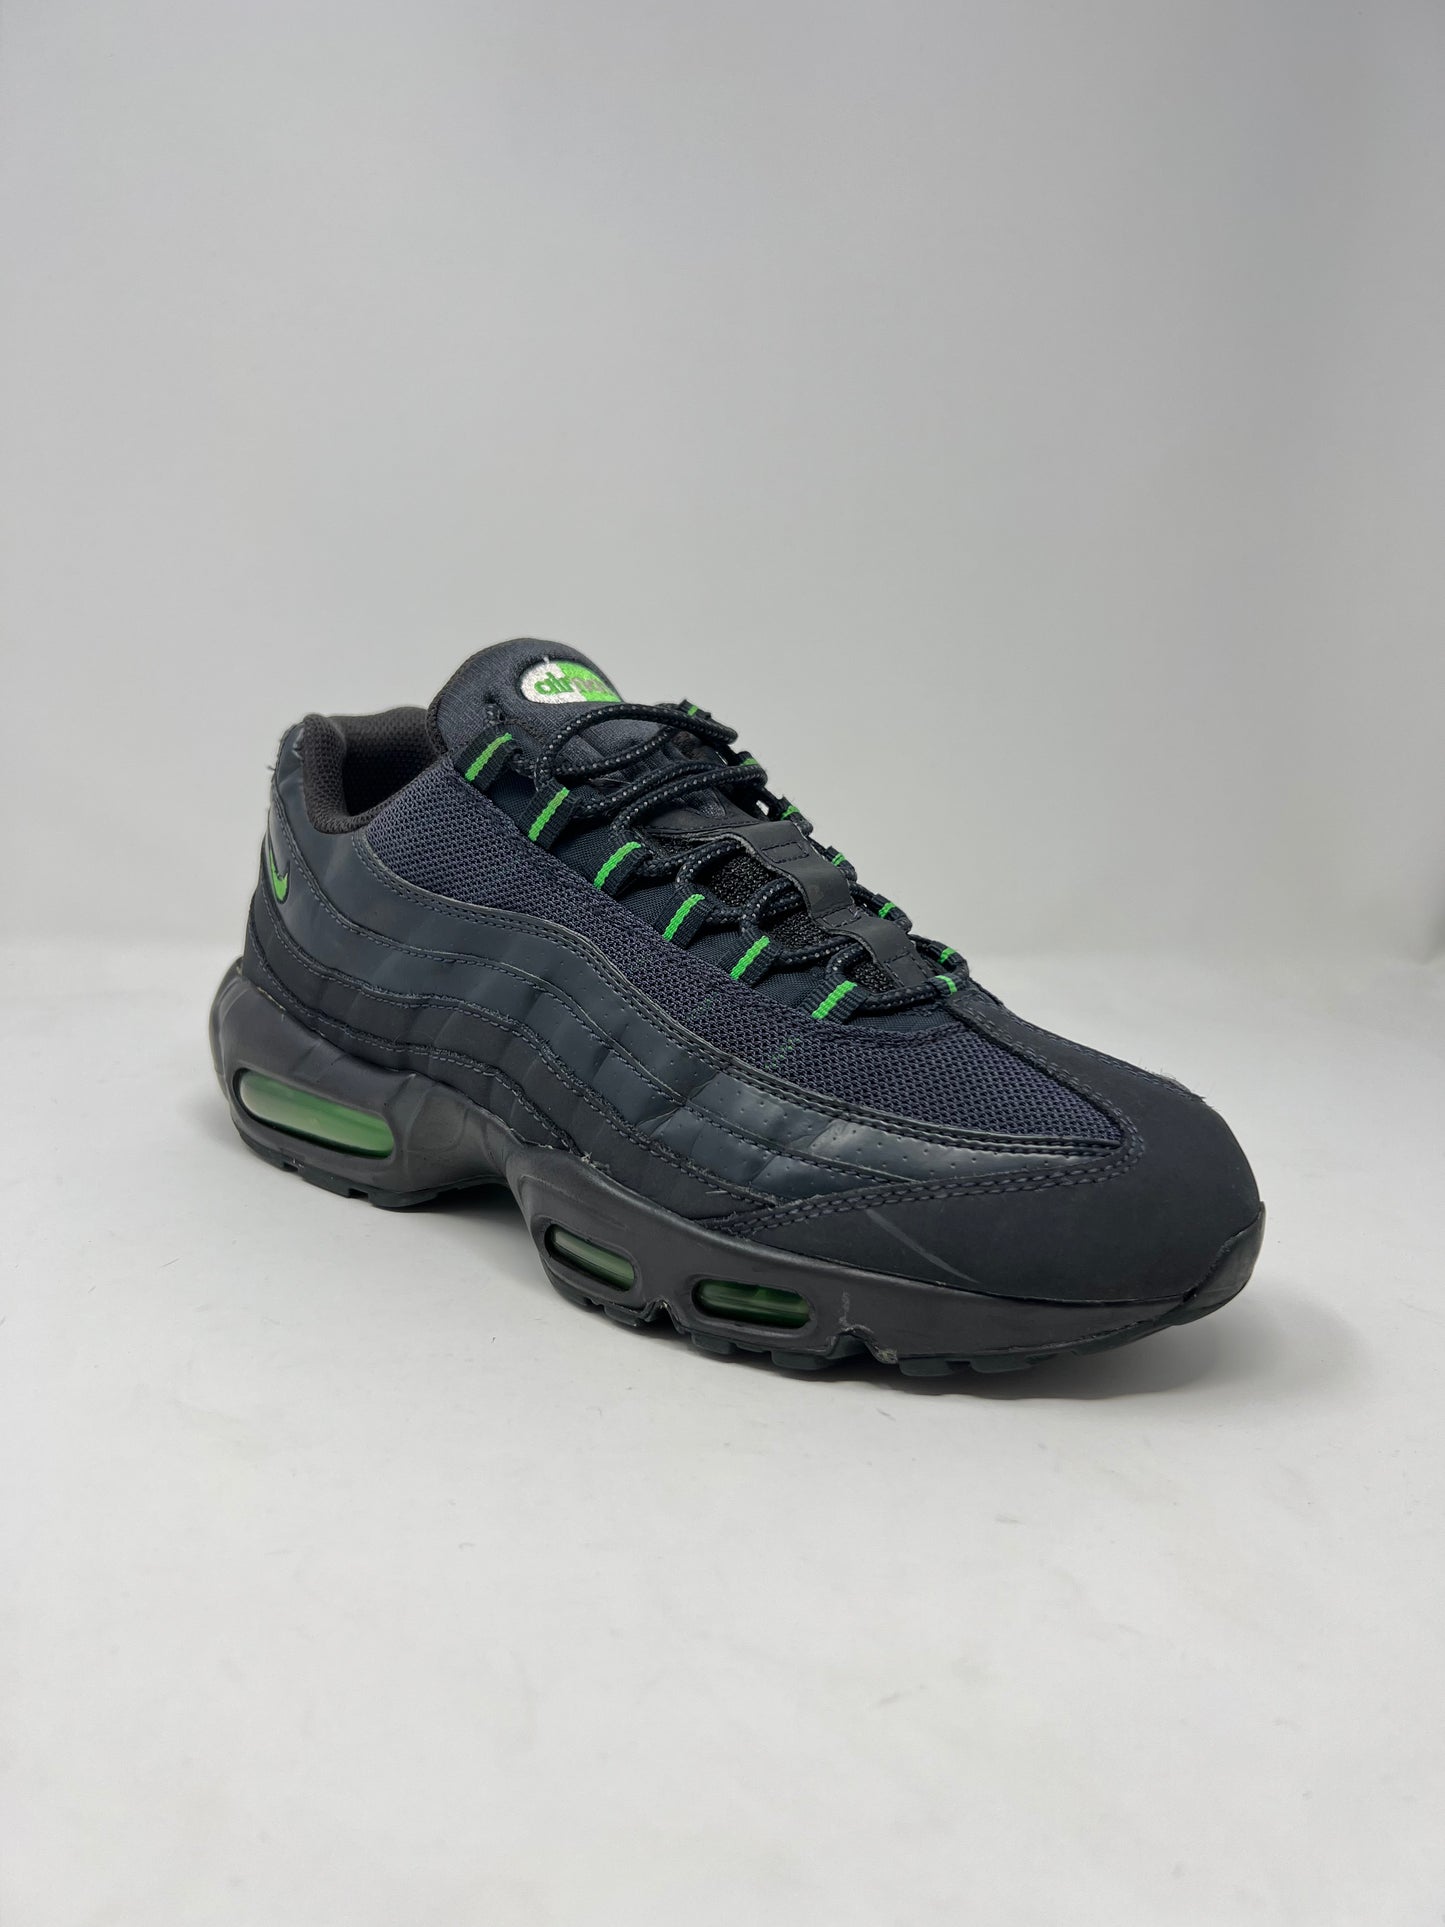 Nike Air Max 95 SI Grey Green UK9